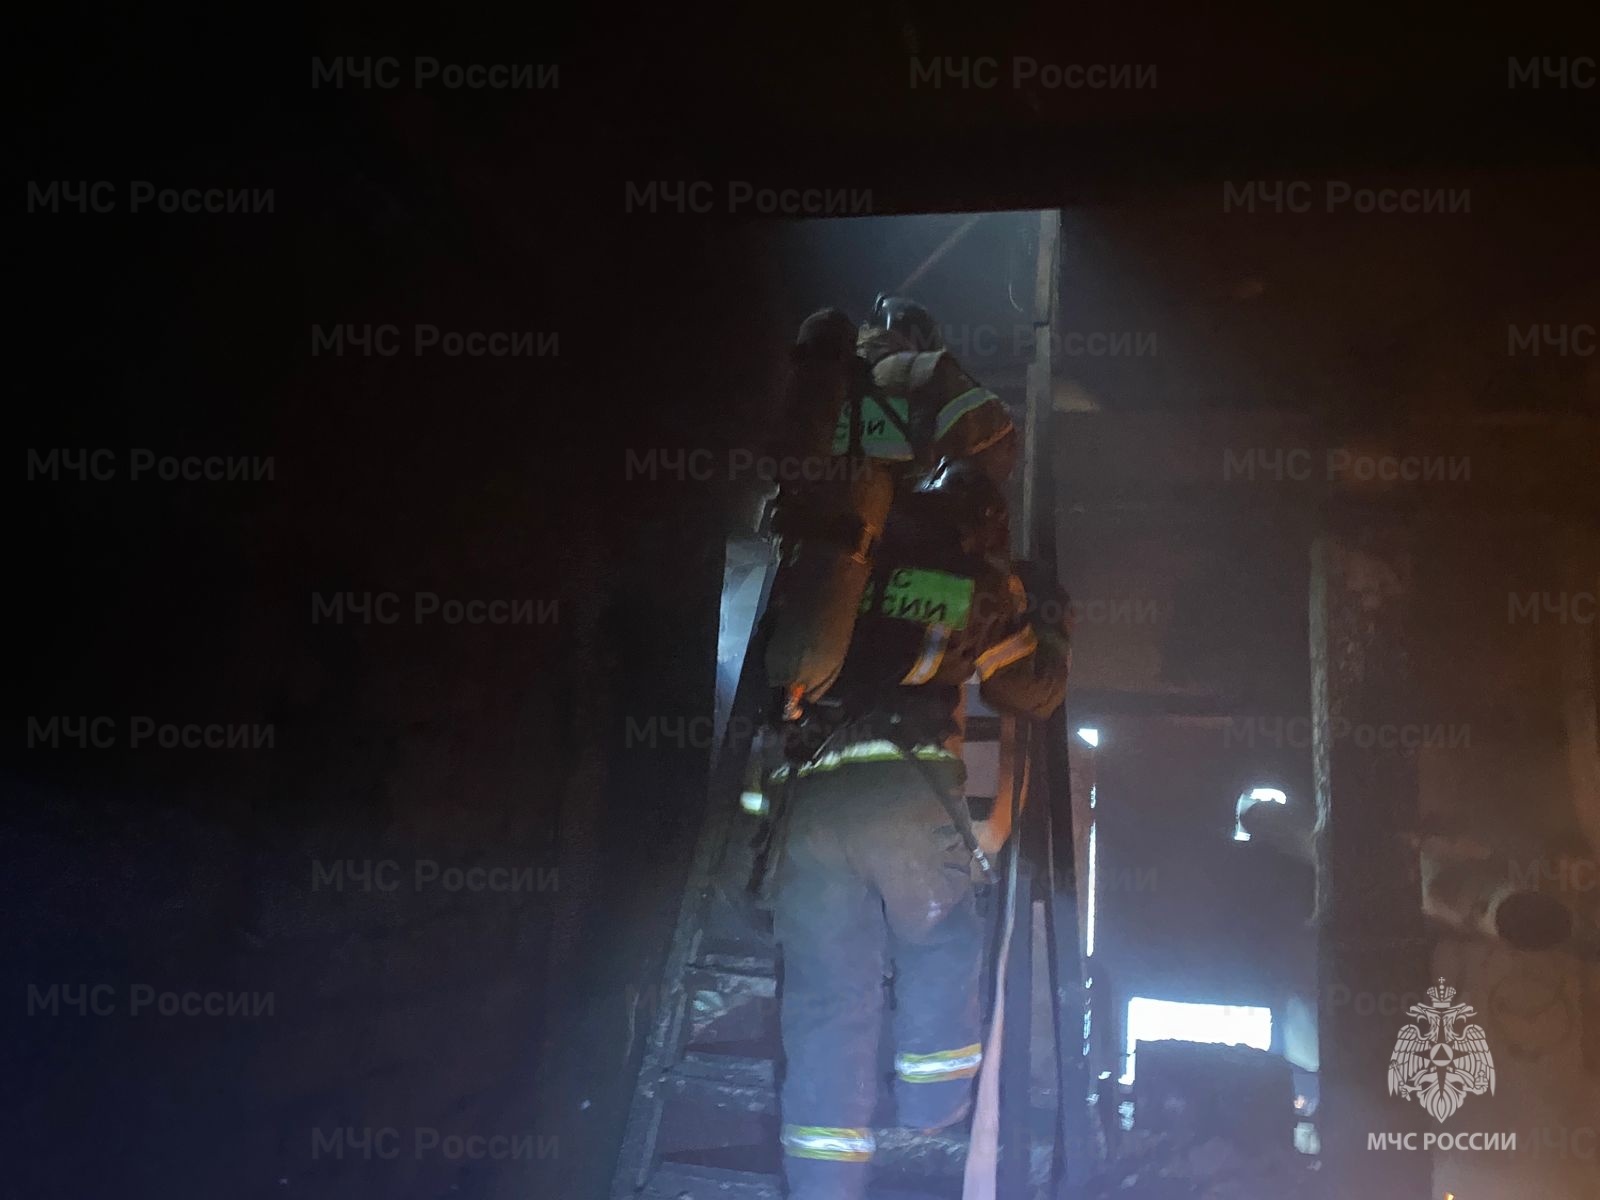 Сотрудники МЧС России ликвидировали пожар на складе в Кимовском районе